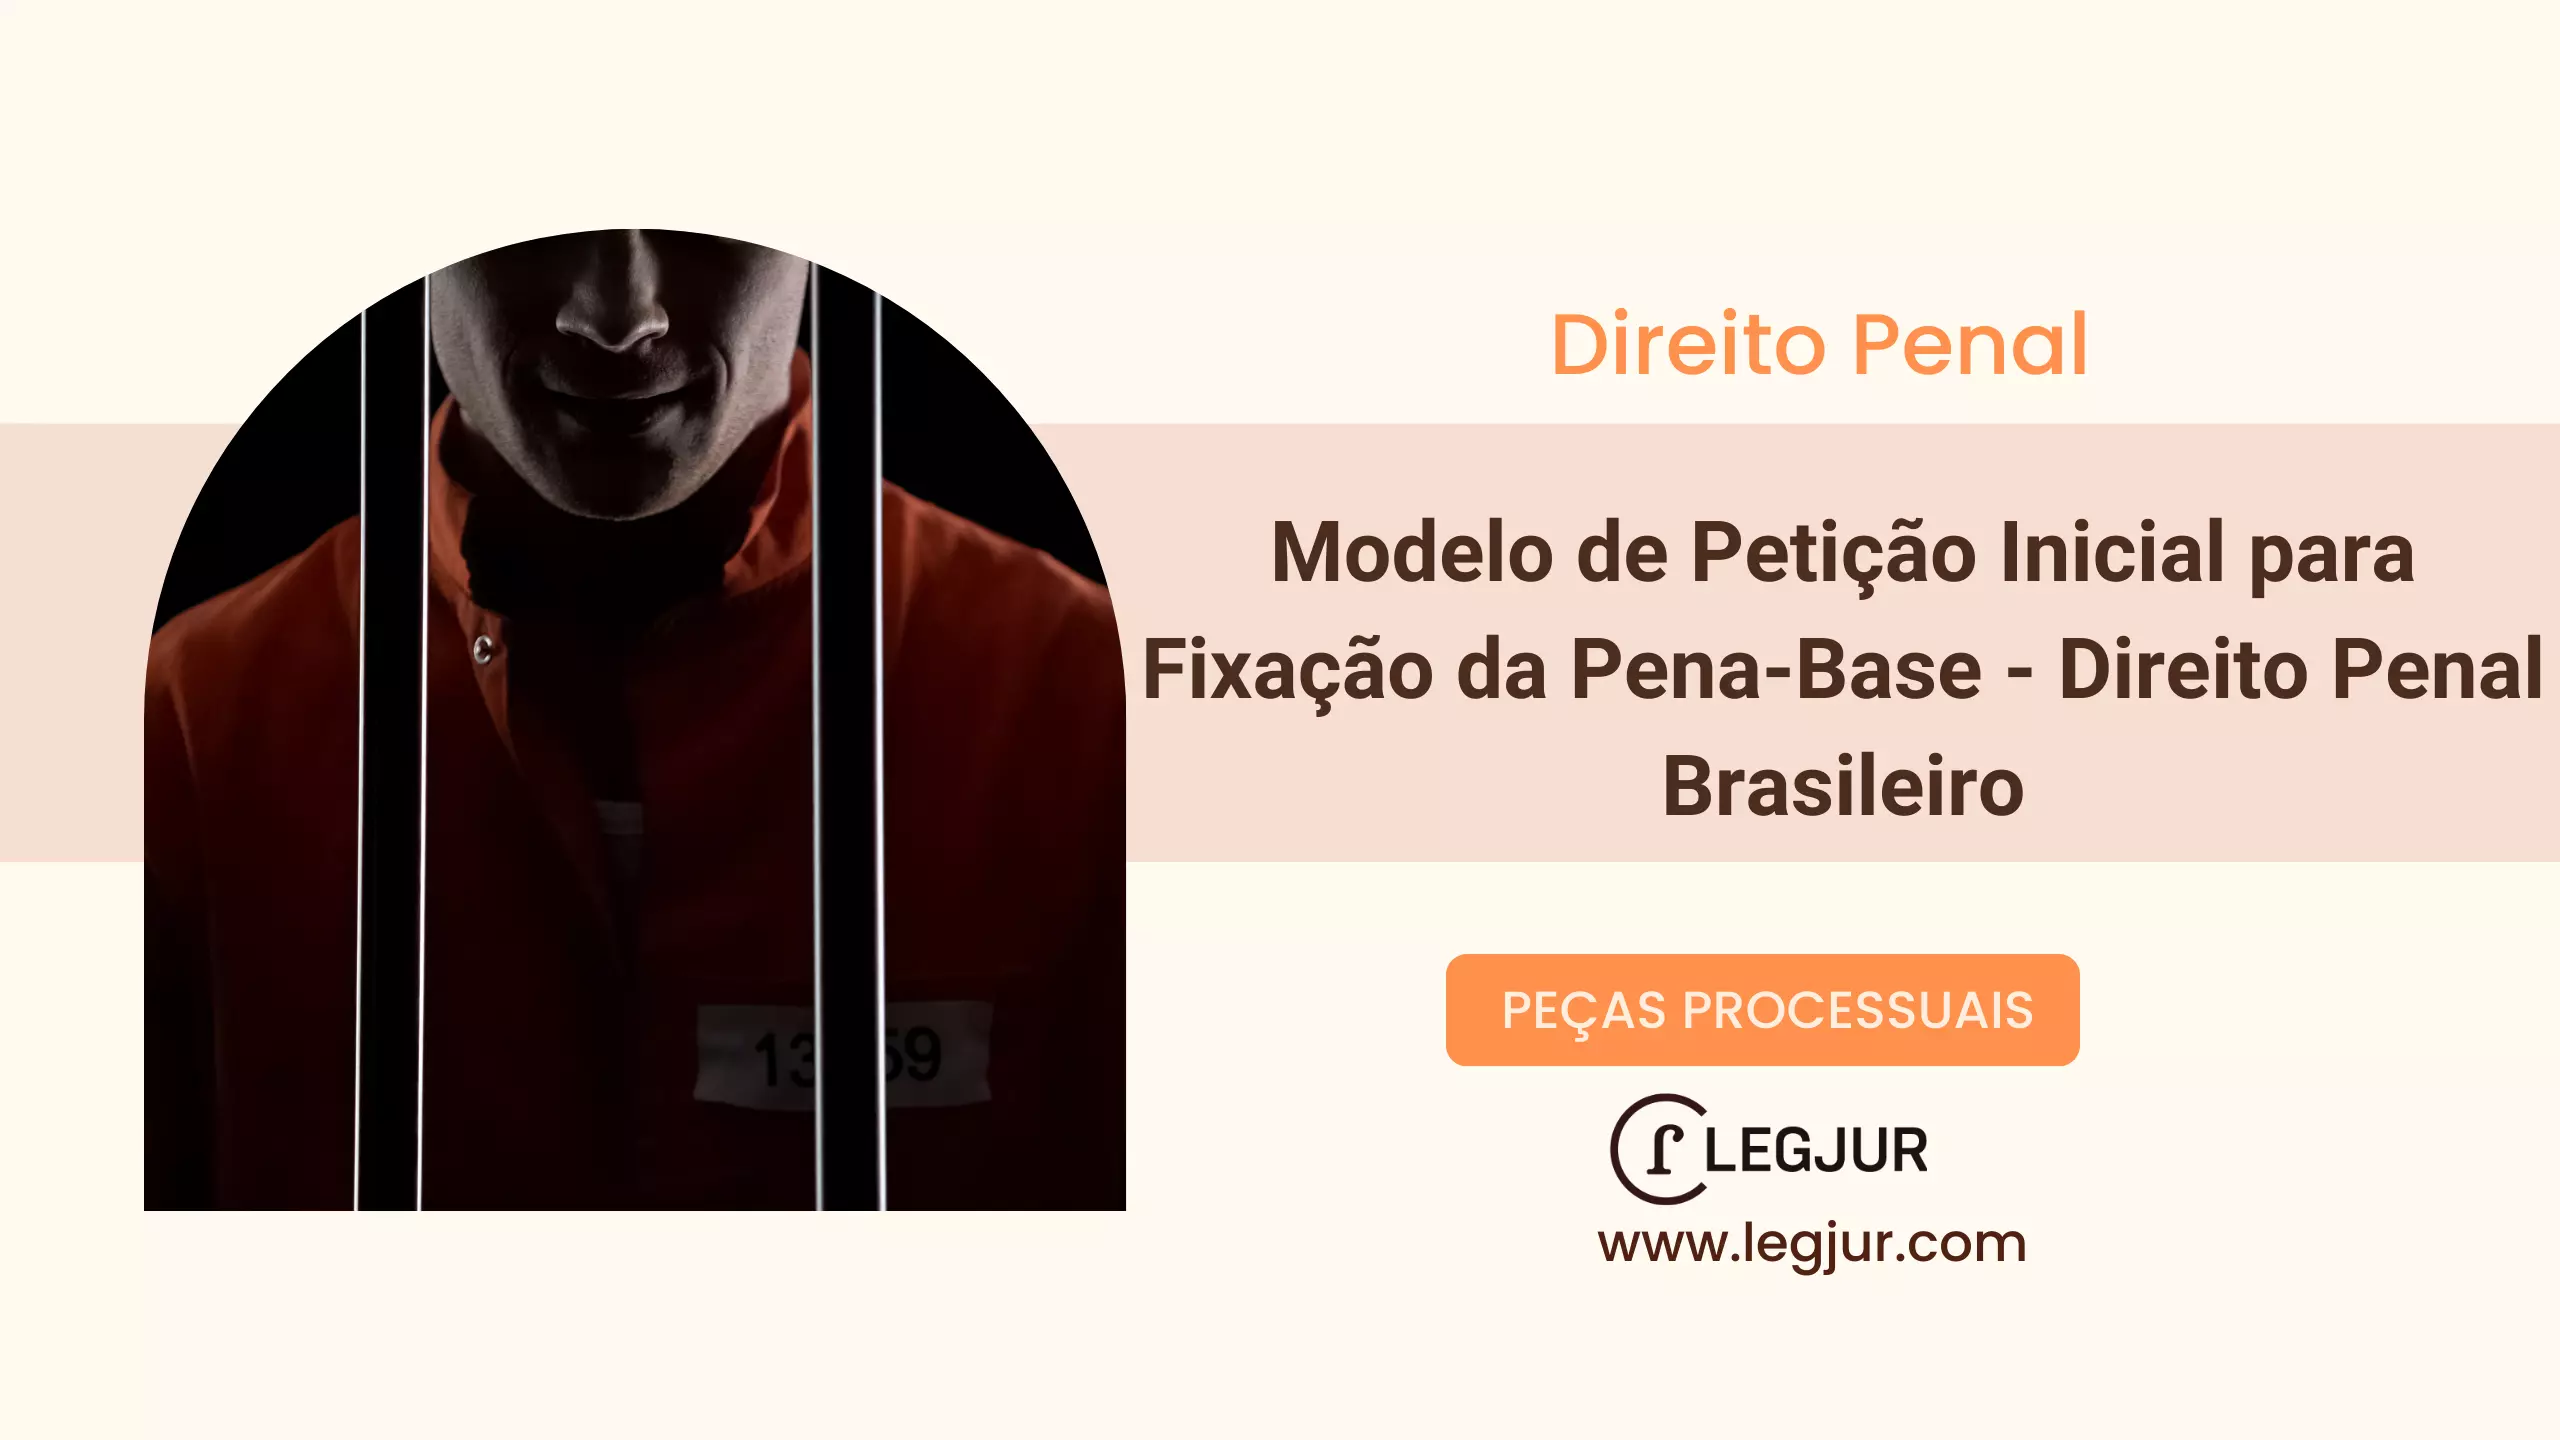 Modelo de Petição Inicial para Fixação da Pena-Base - Direito Penal Brasileiro